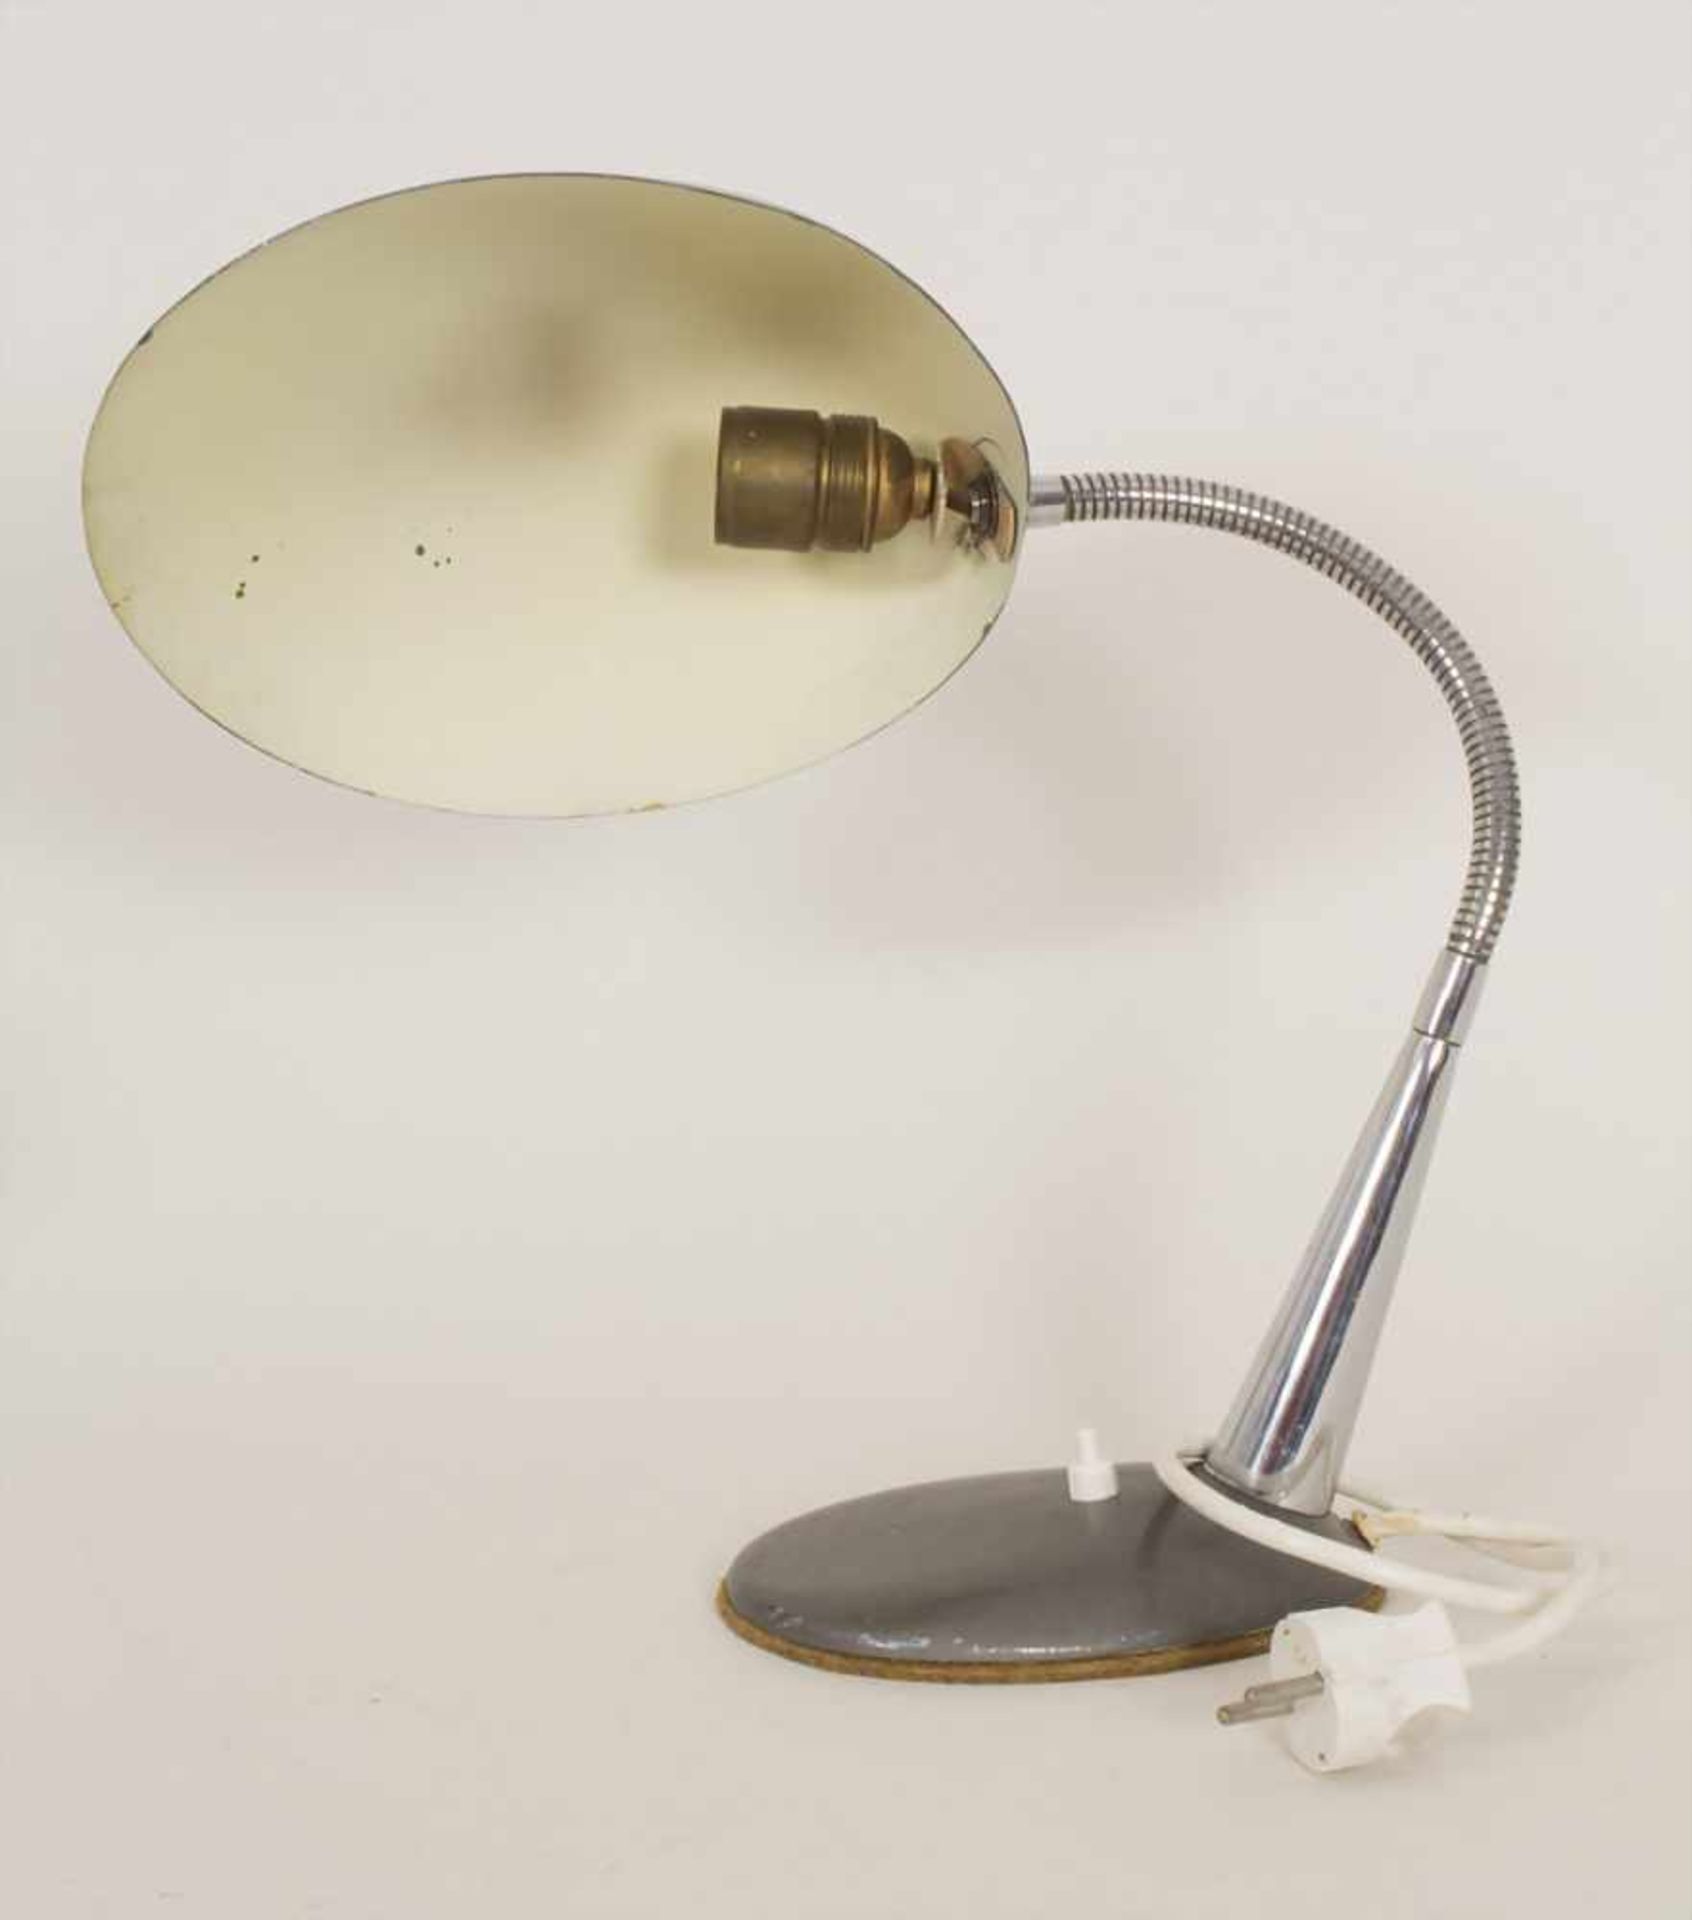 Schreibtischlampe / A desk lamp, um 1950Material: Schirm in Aluminium mit dunkelgrauem - Bild 5 aus 5